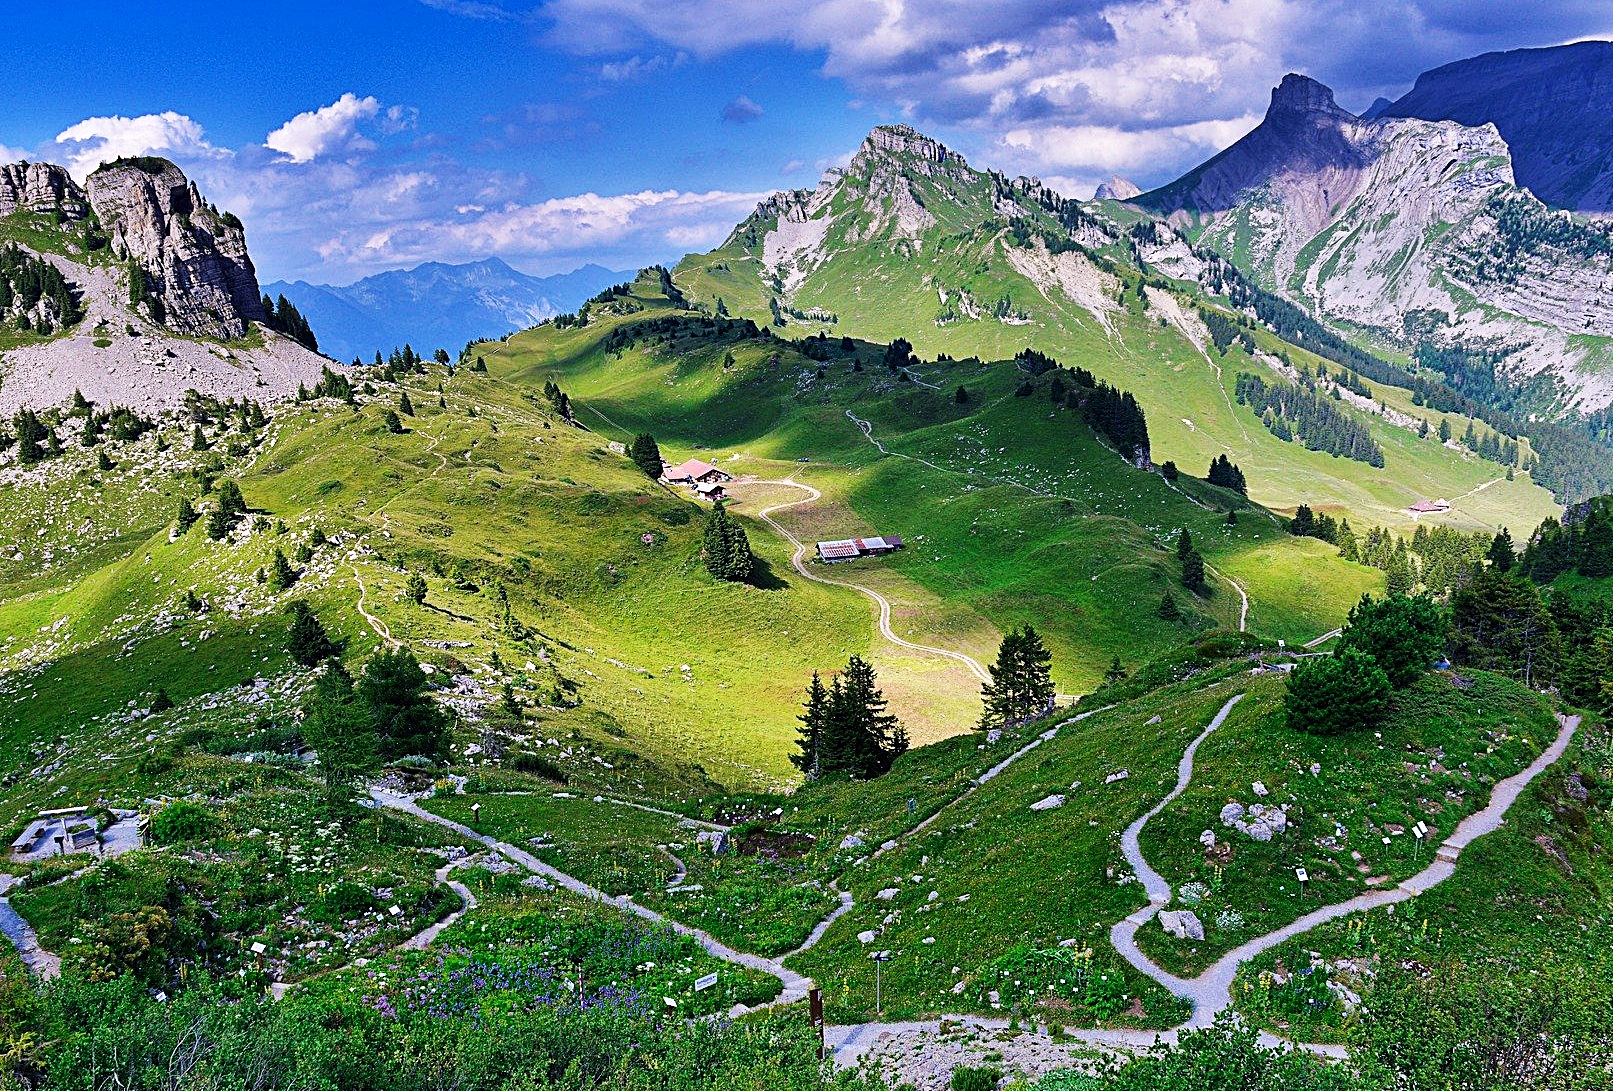 내셔널 지오그래픽은 알프스 마을에서 하이킹을 즐길 수 있는 스위스를 가족 여행지로 선정했다.